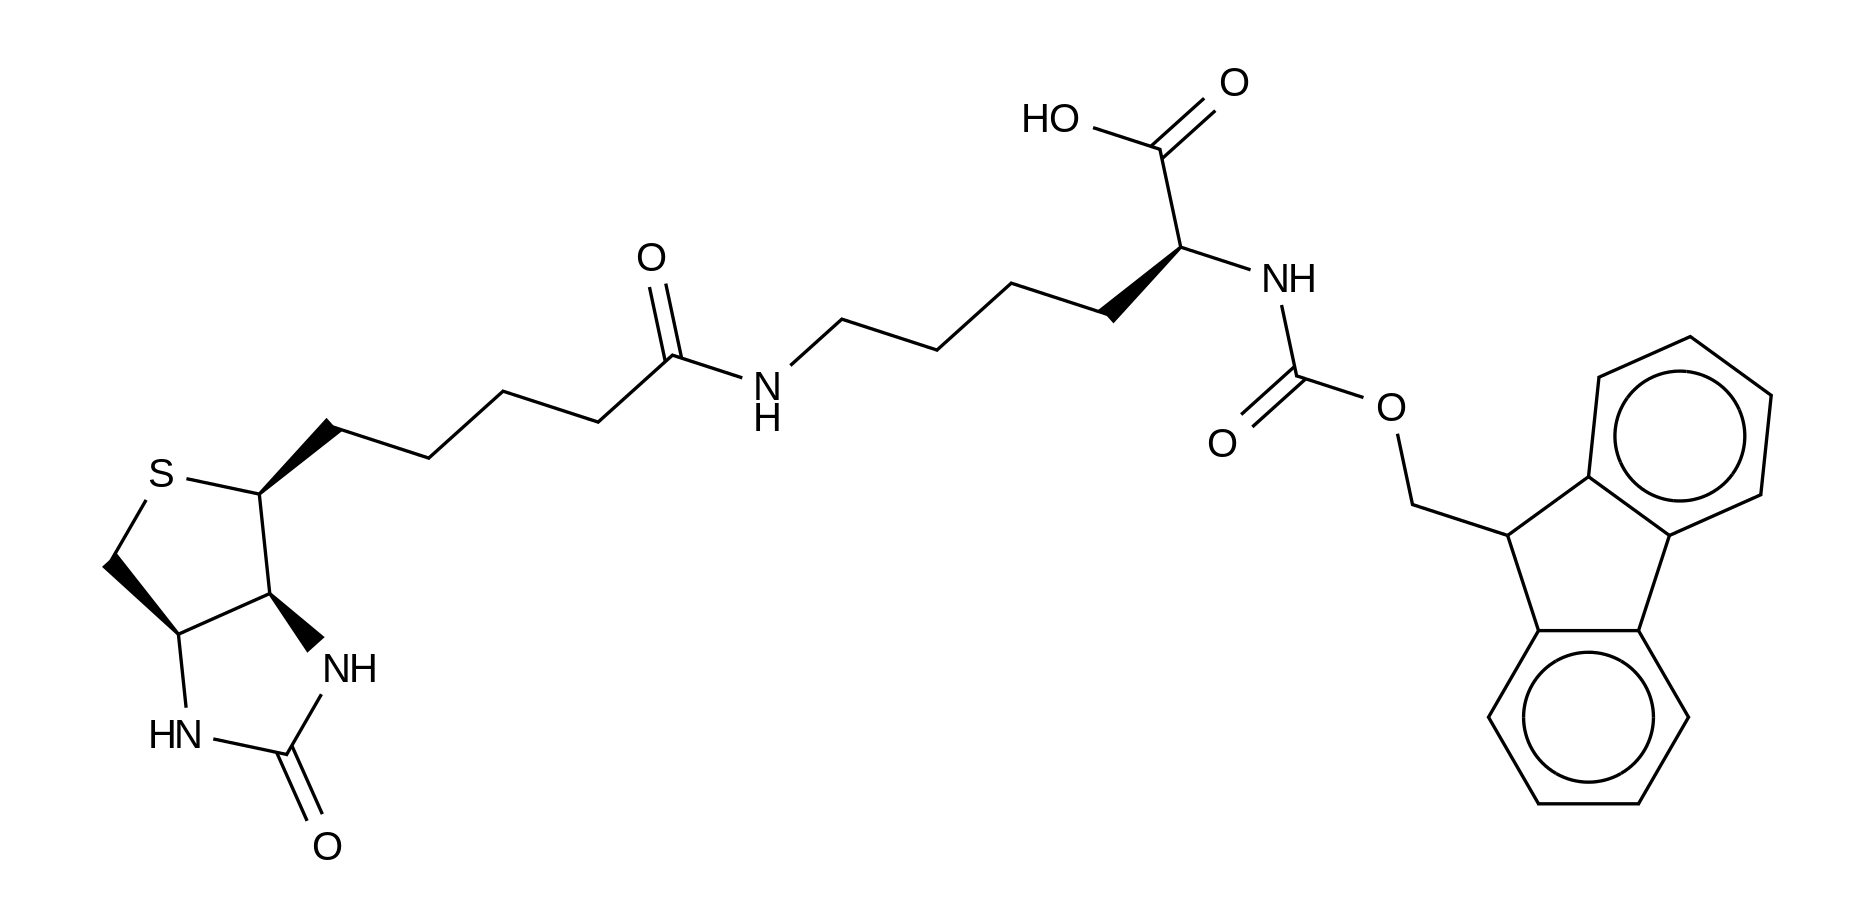 Nα-Fmoc-Nε-biotinyl-L-lysine